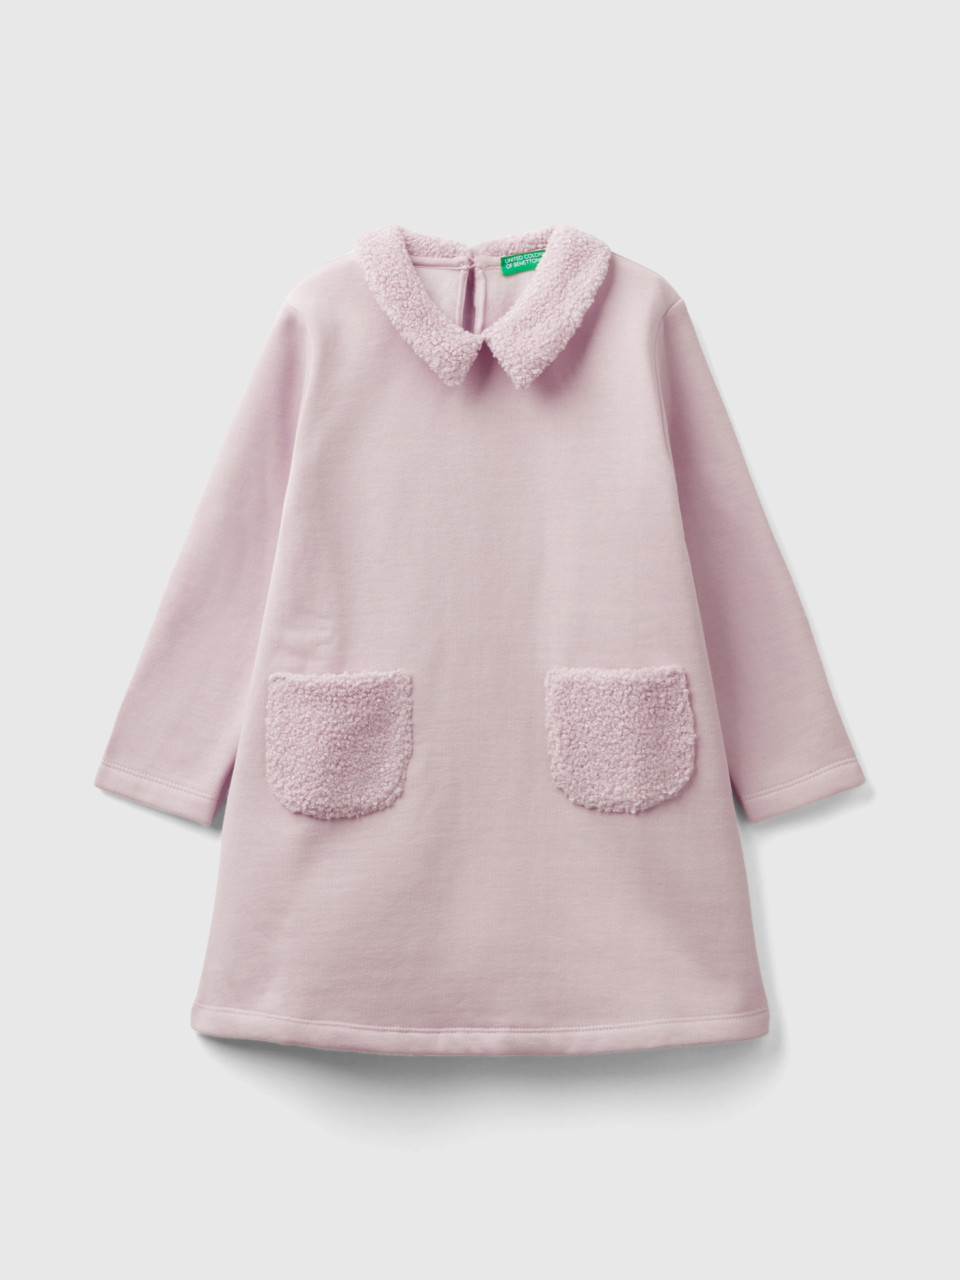 Benetton, Vestido Em Mistura De Algodão Quente, Rosa Pink, Crianças